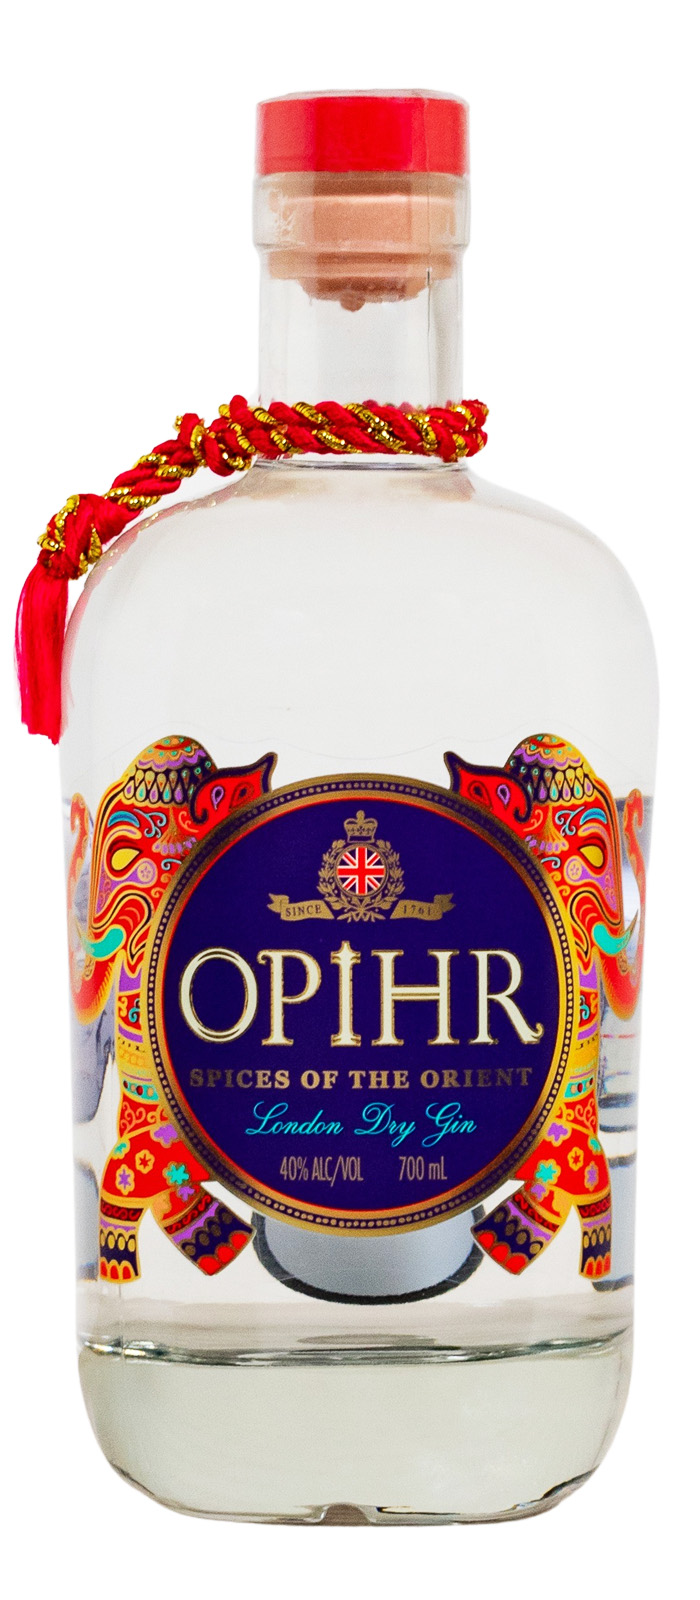 Opihr Oriental Spiced London Dry günstig kaufen